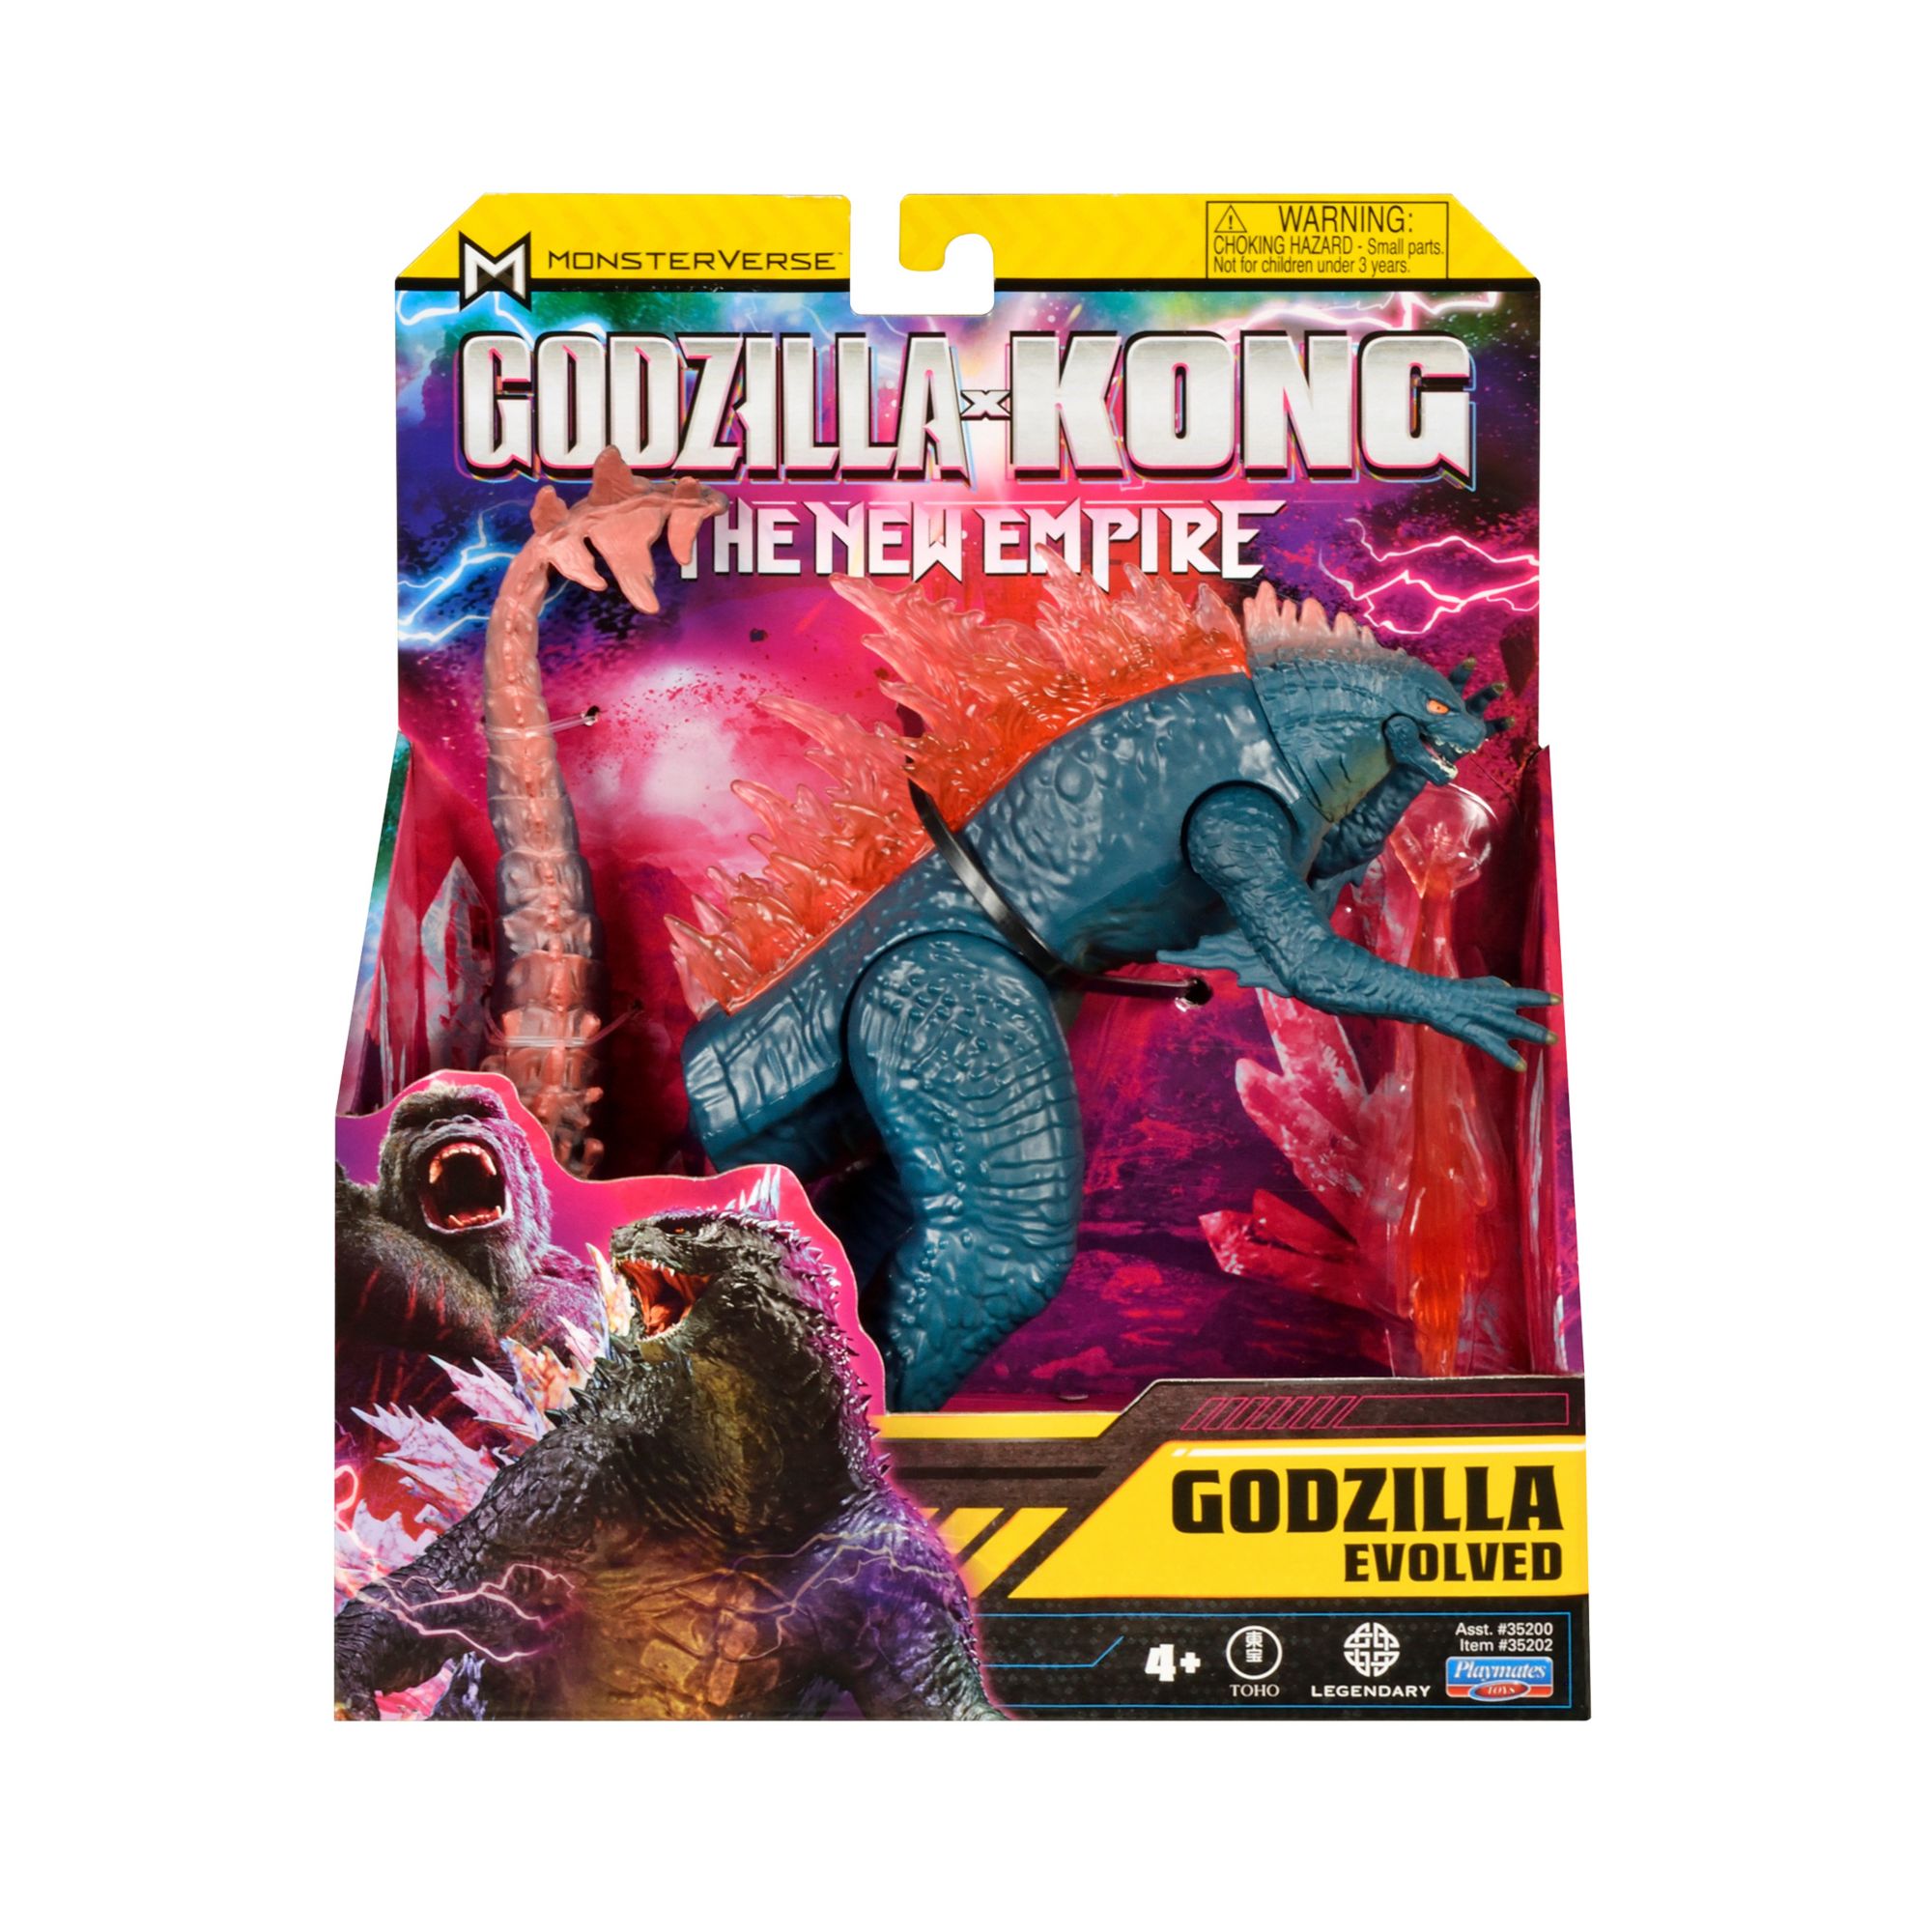 Playmates Godzilla X Kong 6